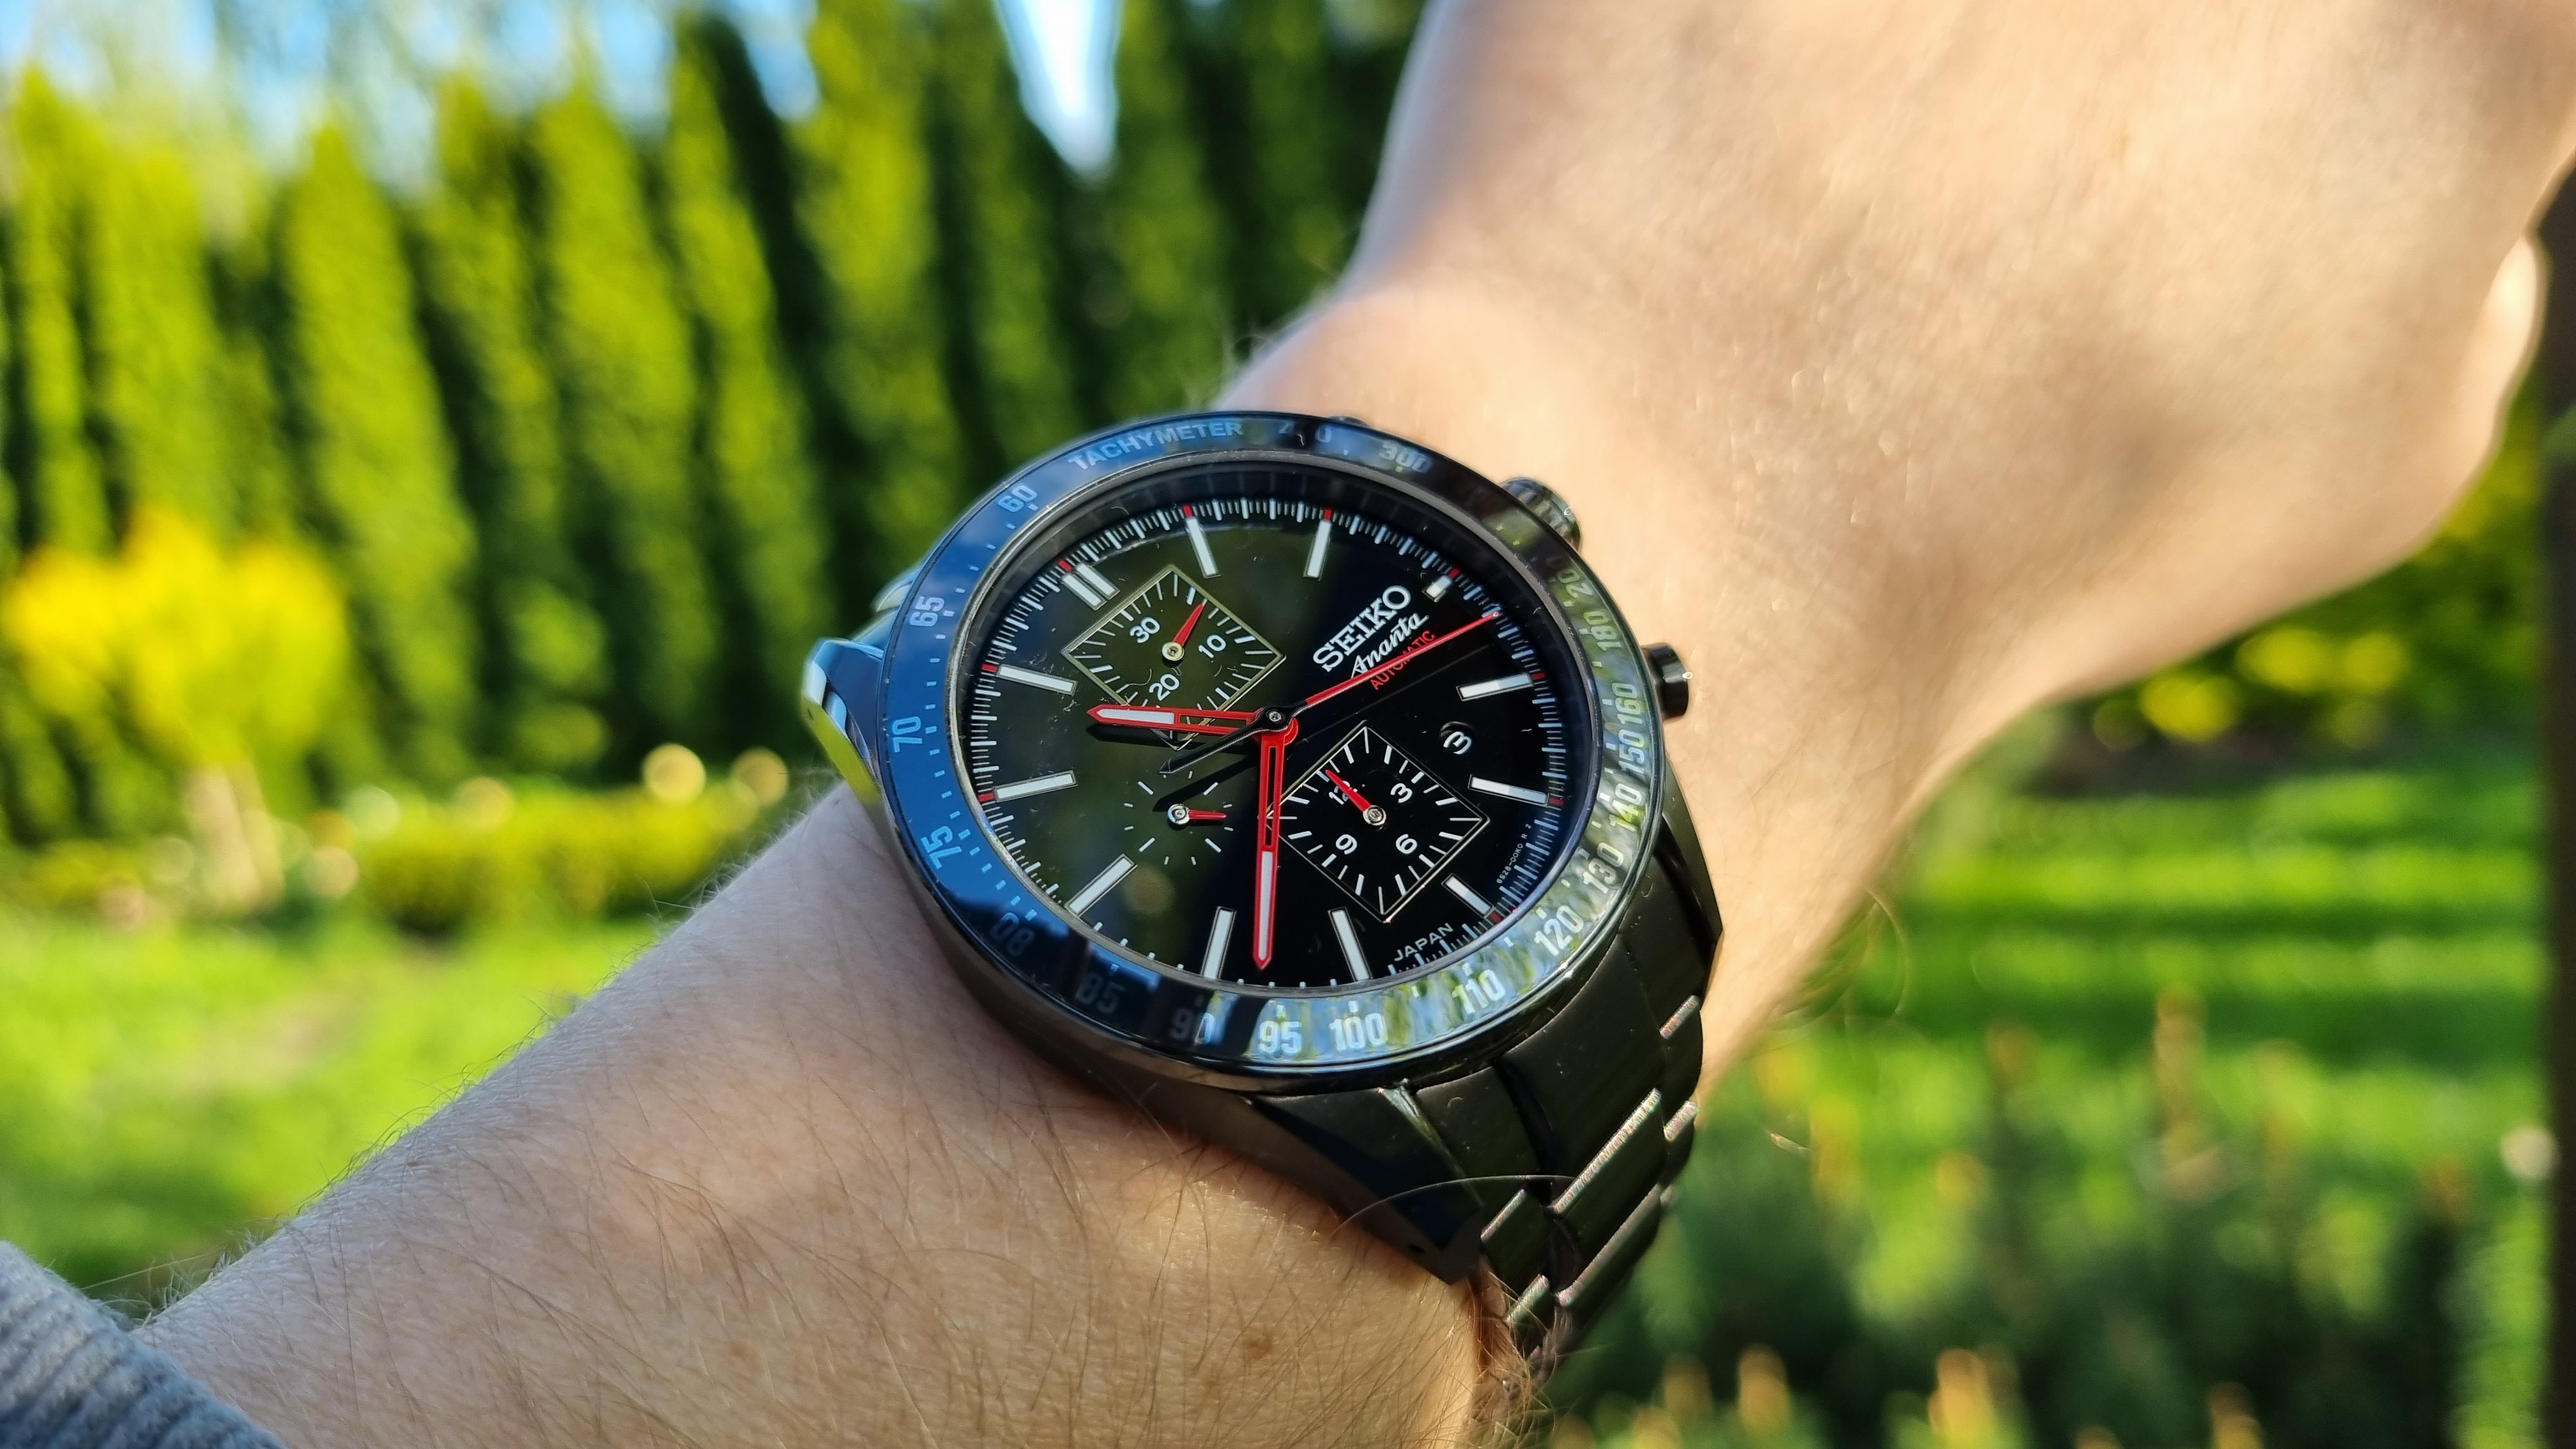 Ananta Black/Red Chrono ssd001 - Seiko Luxe Ananta wrist watch